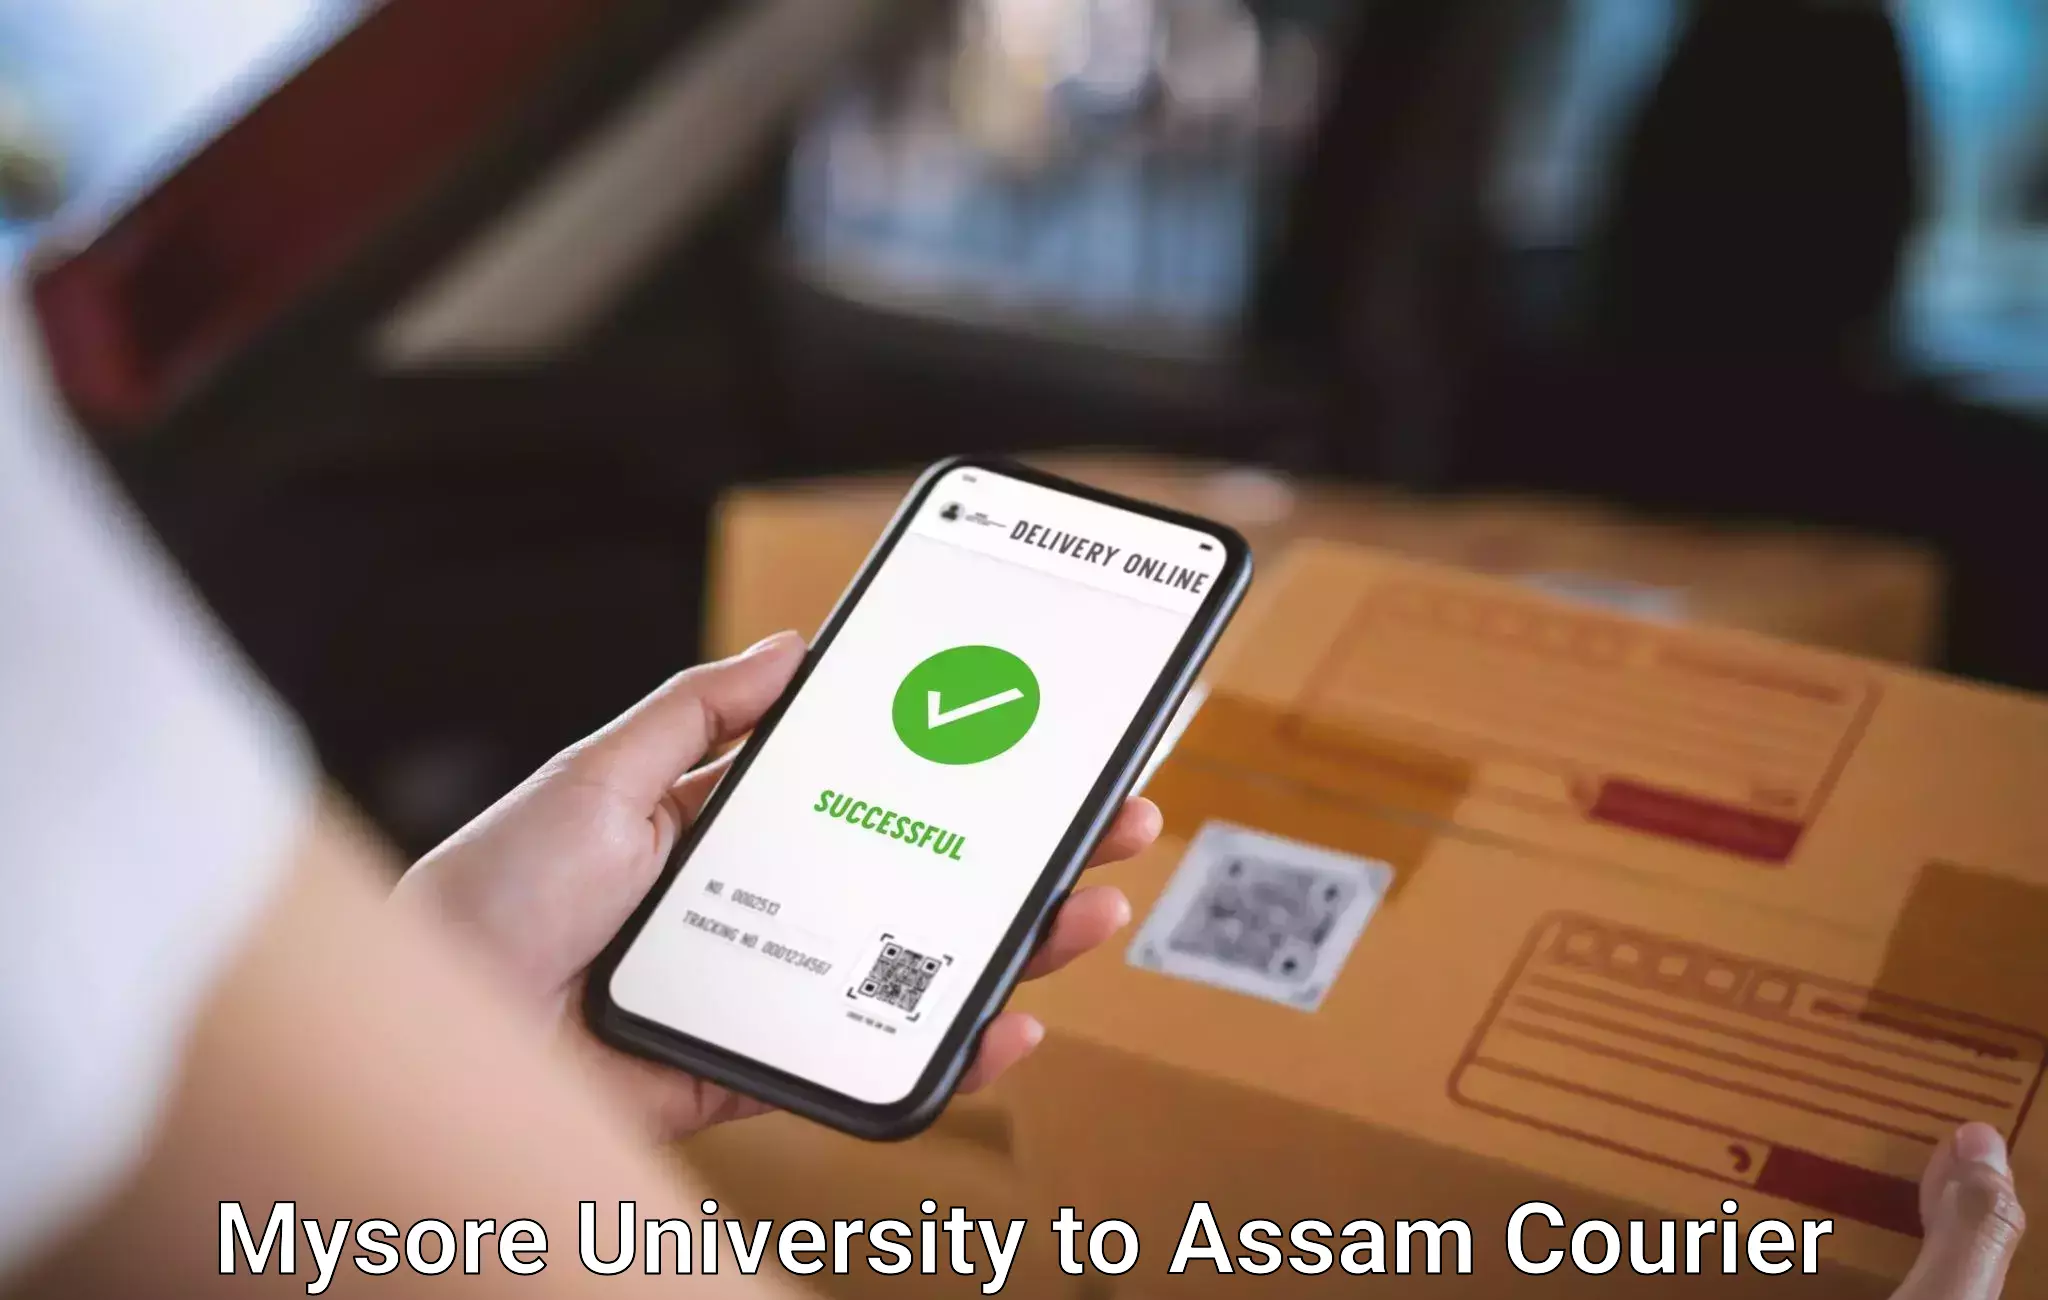 Luggage forwarding service Mysore University to Assam